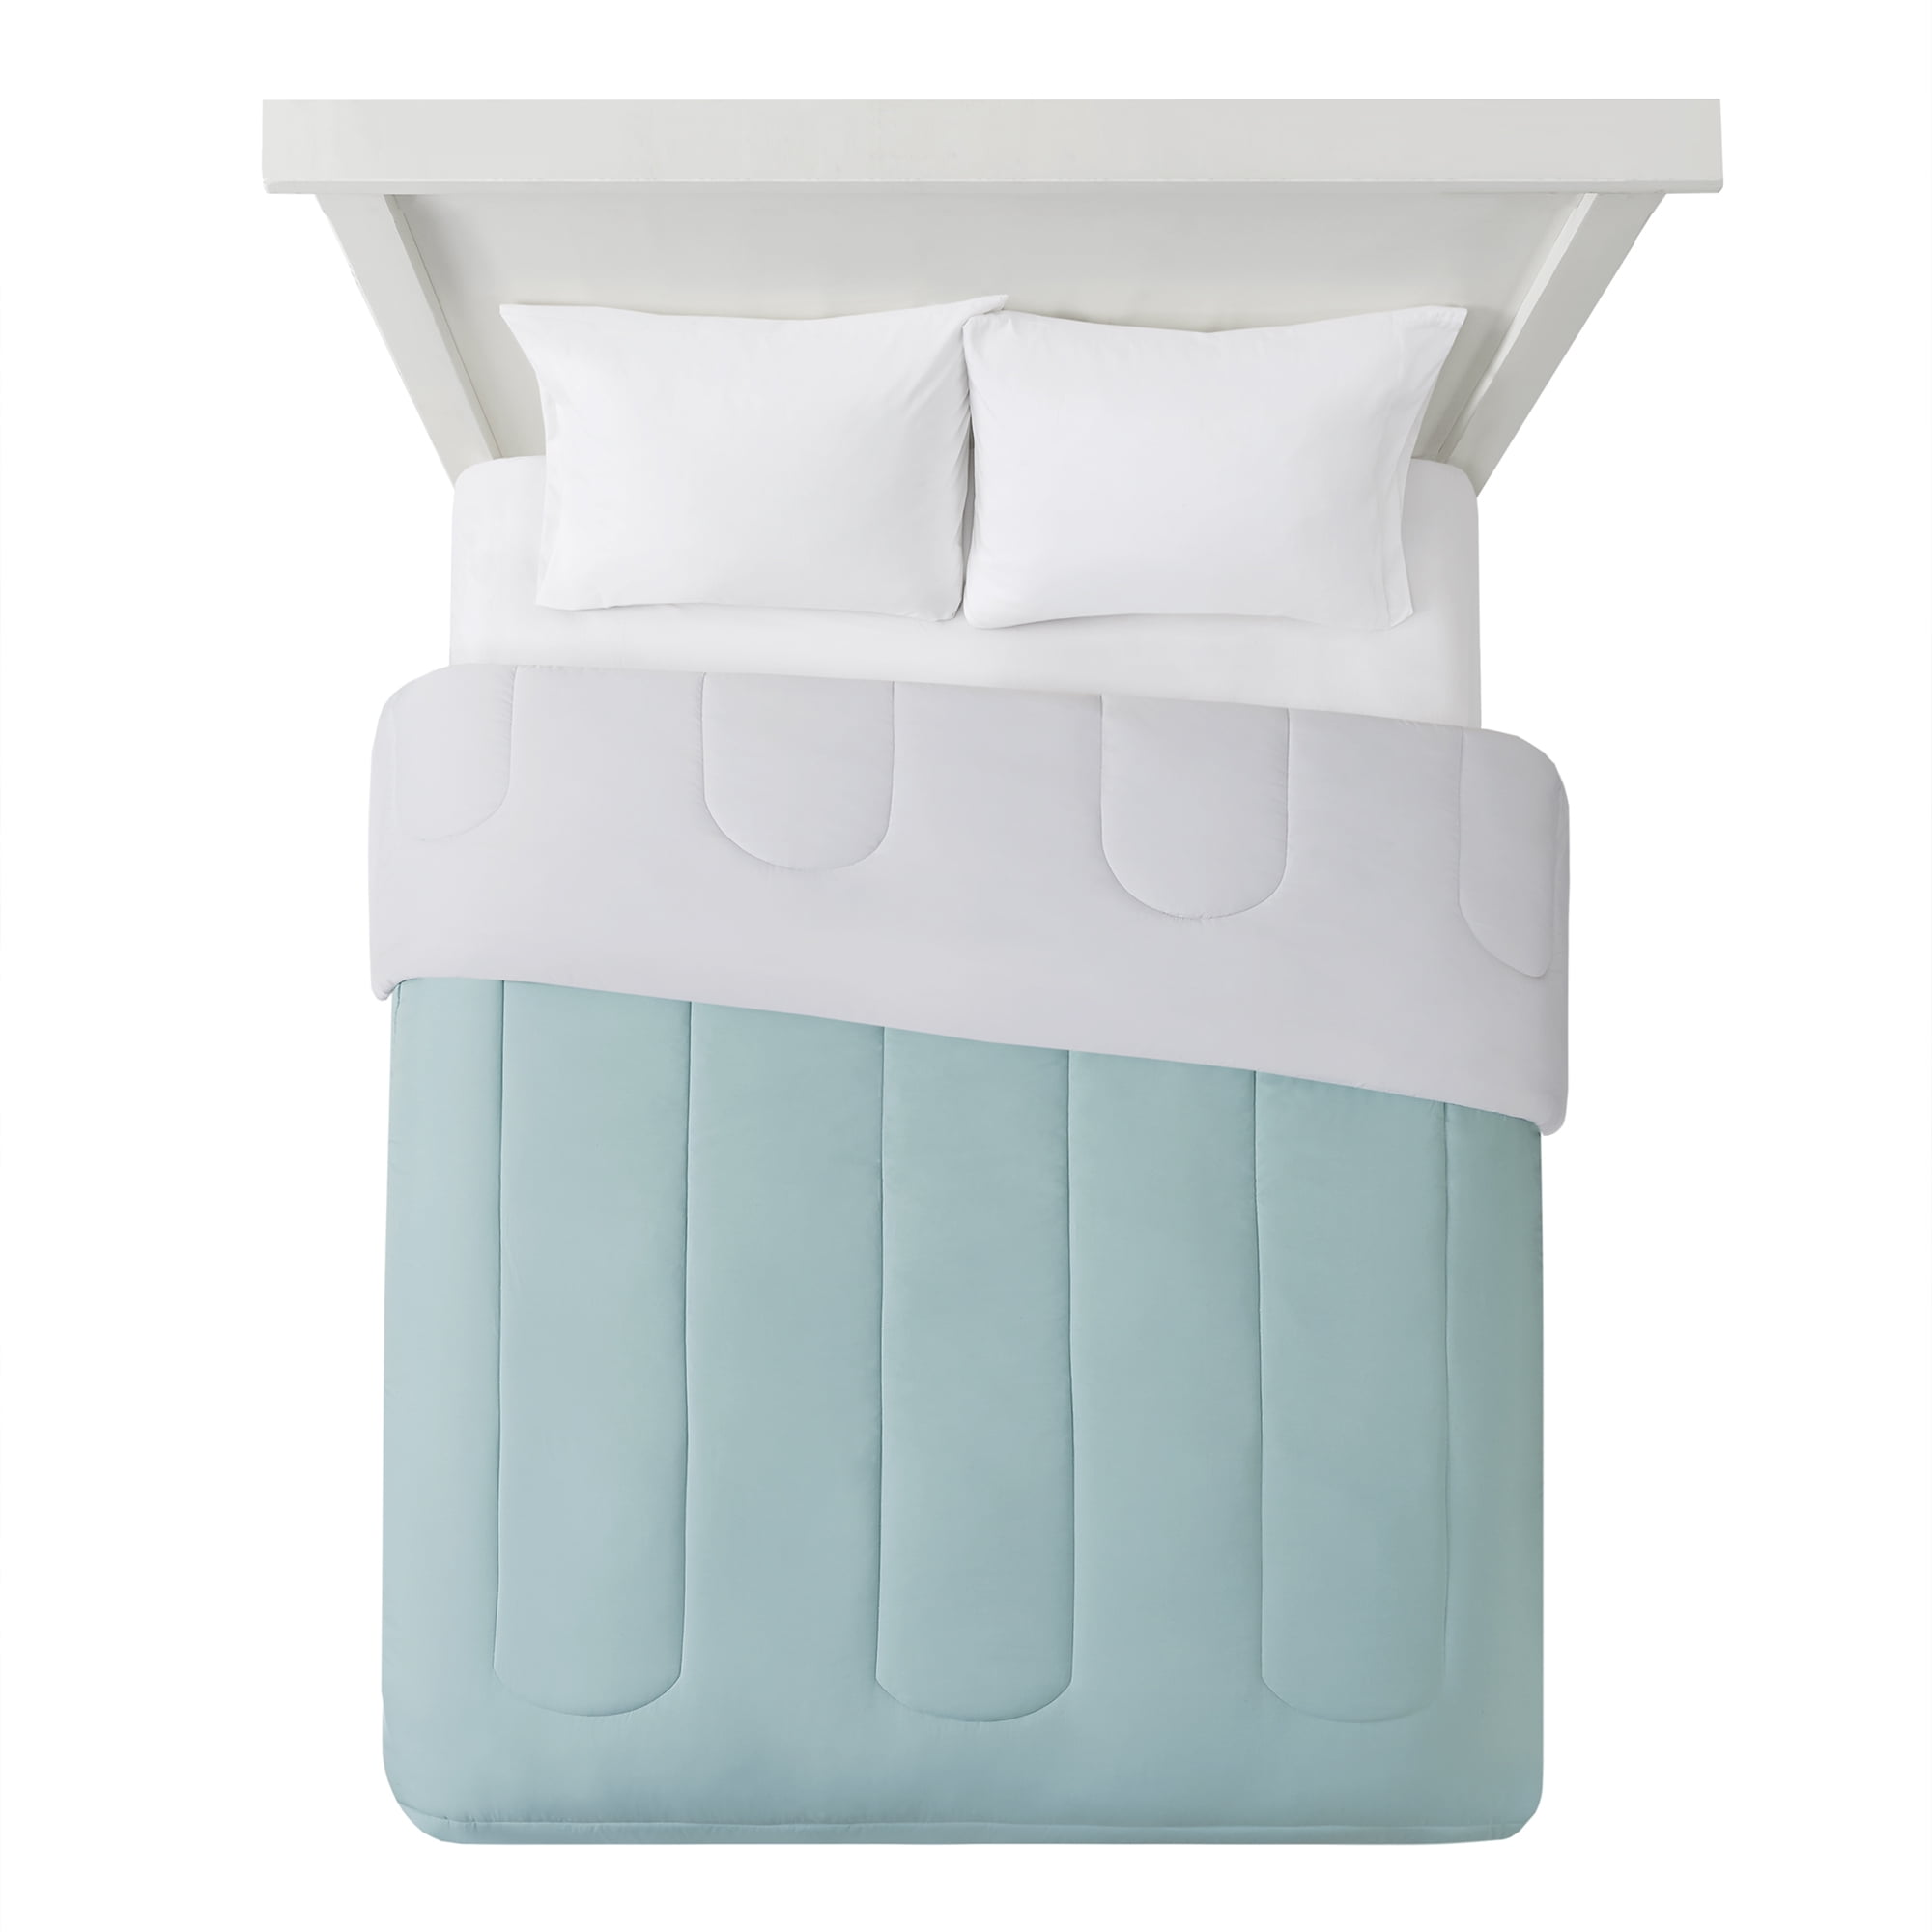 Slumber 1 By Zinus Comfort 6 Twin Pack, Slumber 1 Comfort 6 Twin Pack Bunk Bed Spring Mattress